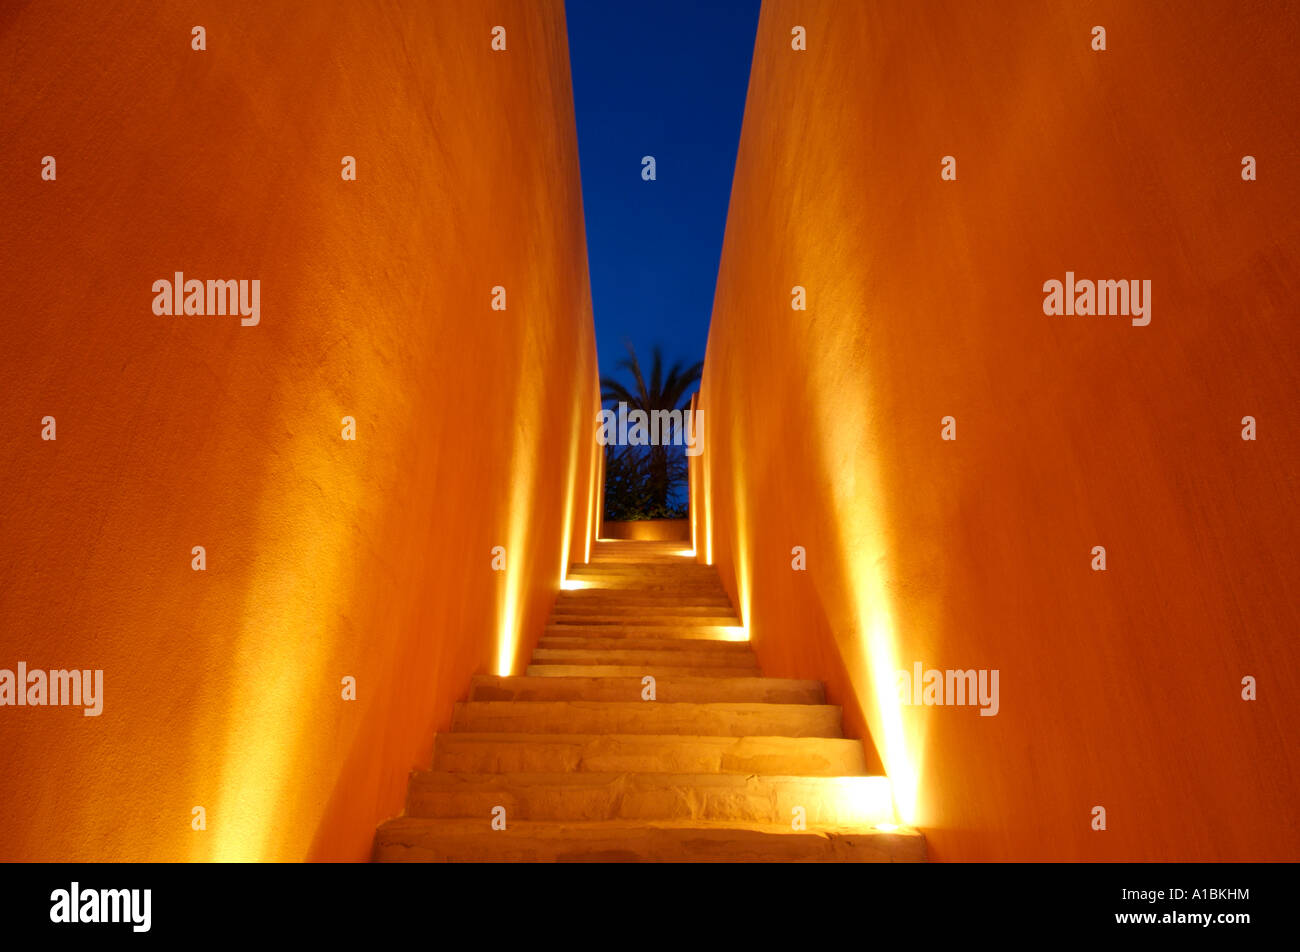 Kräftige Farben und geometrischen Formen zum Ausdruck in der Architektur eines mexikanischen Resorts Marina Costa Baja Baja California Mexiko Stockfoto